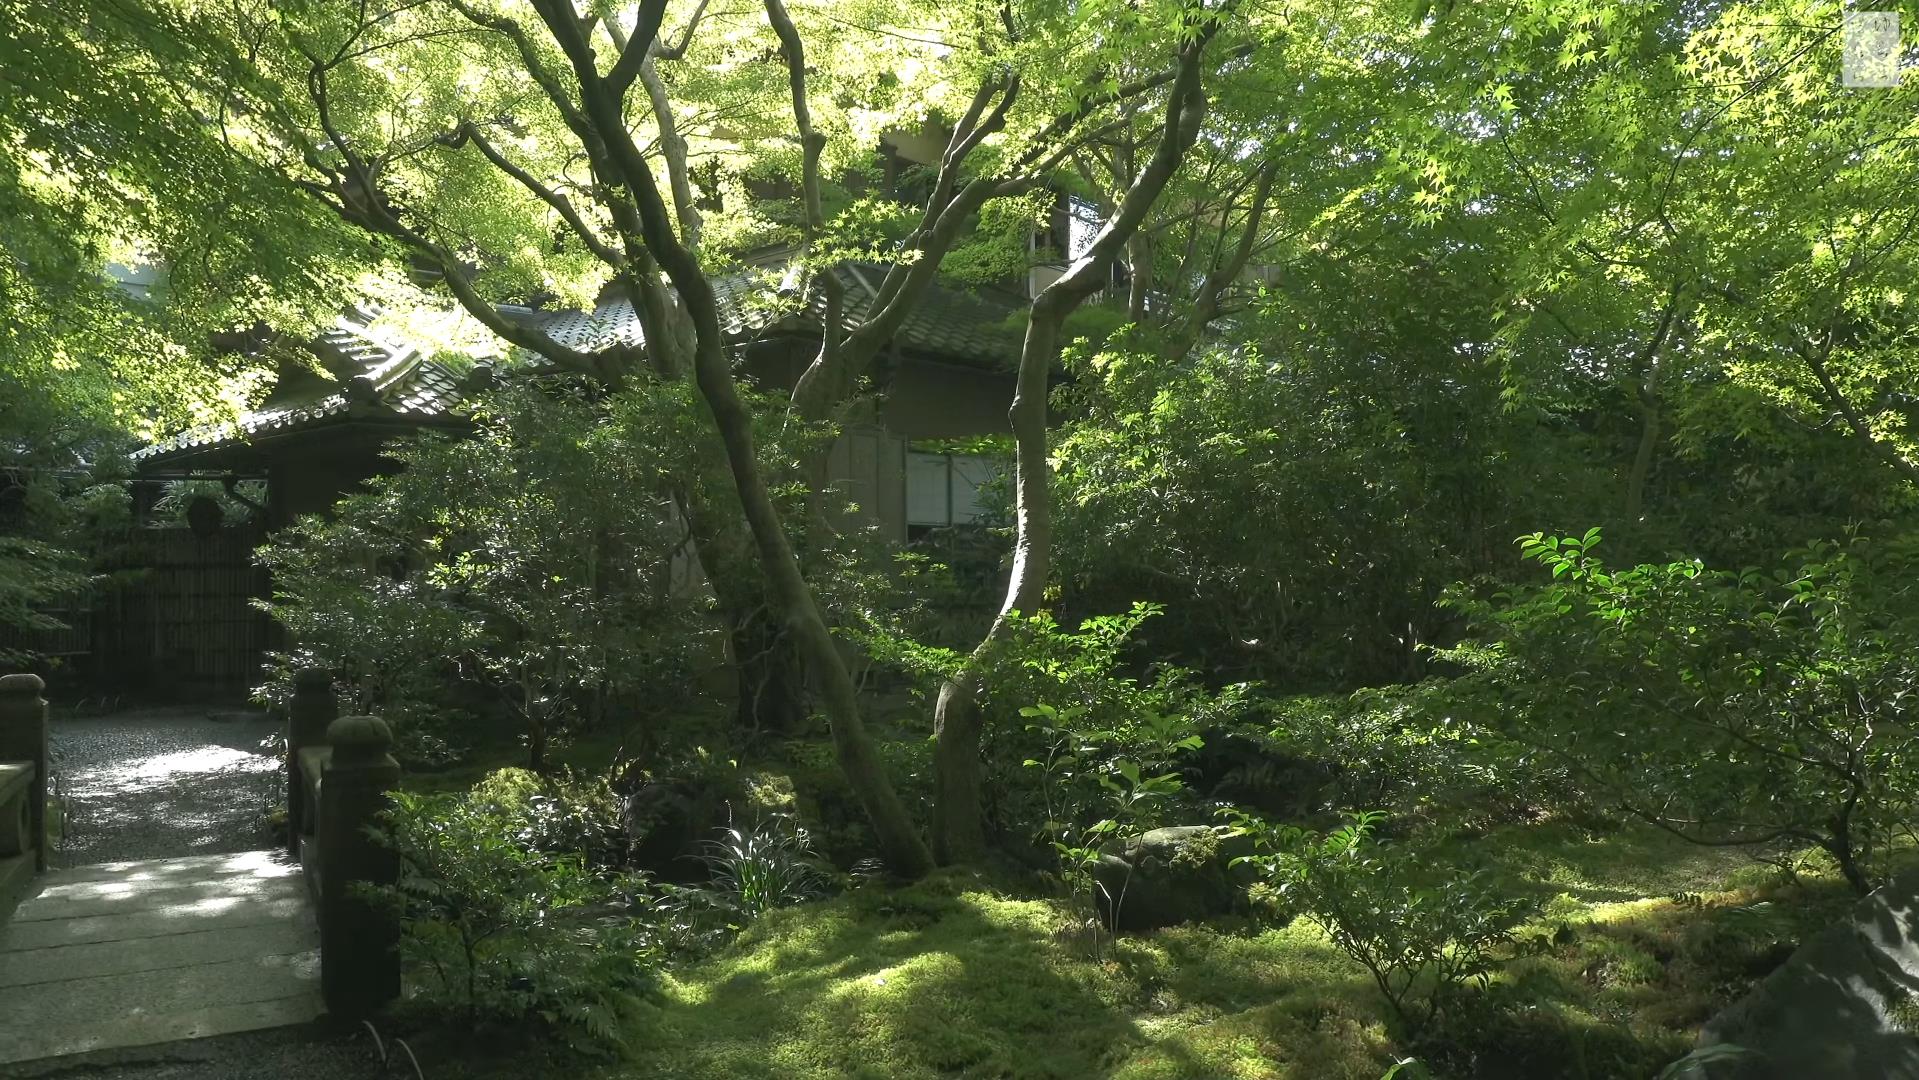 Wabi-Sabi-侘寂庭院,侘寂庭院,京都,侘寂设计,侘寂视频下载,日式侘寂庭院,瑠璃光院